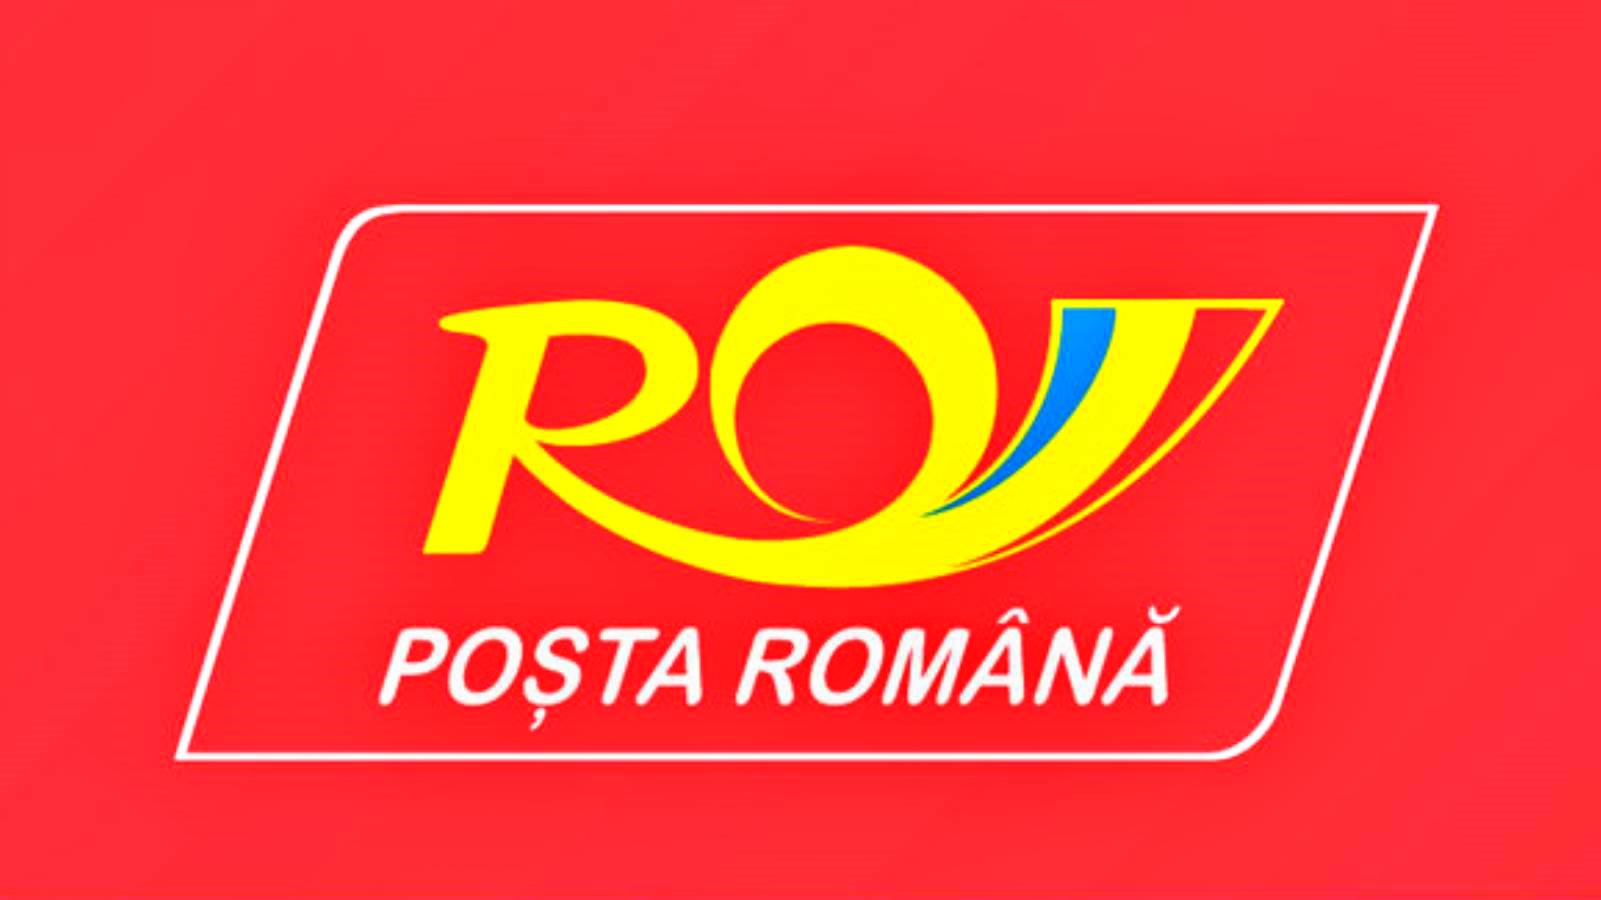 Le Poste Rumene hanno fatto l'annuncio atteso da MILIONI di rumeni nel paese